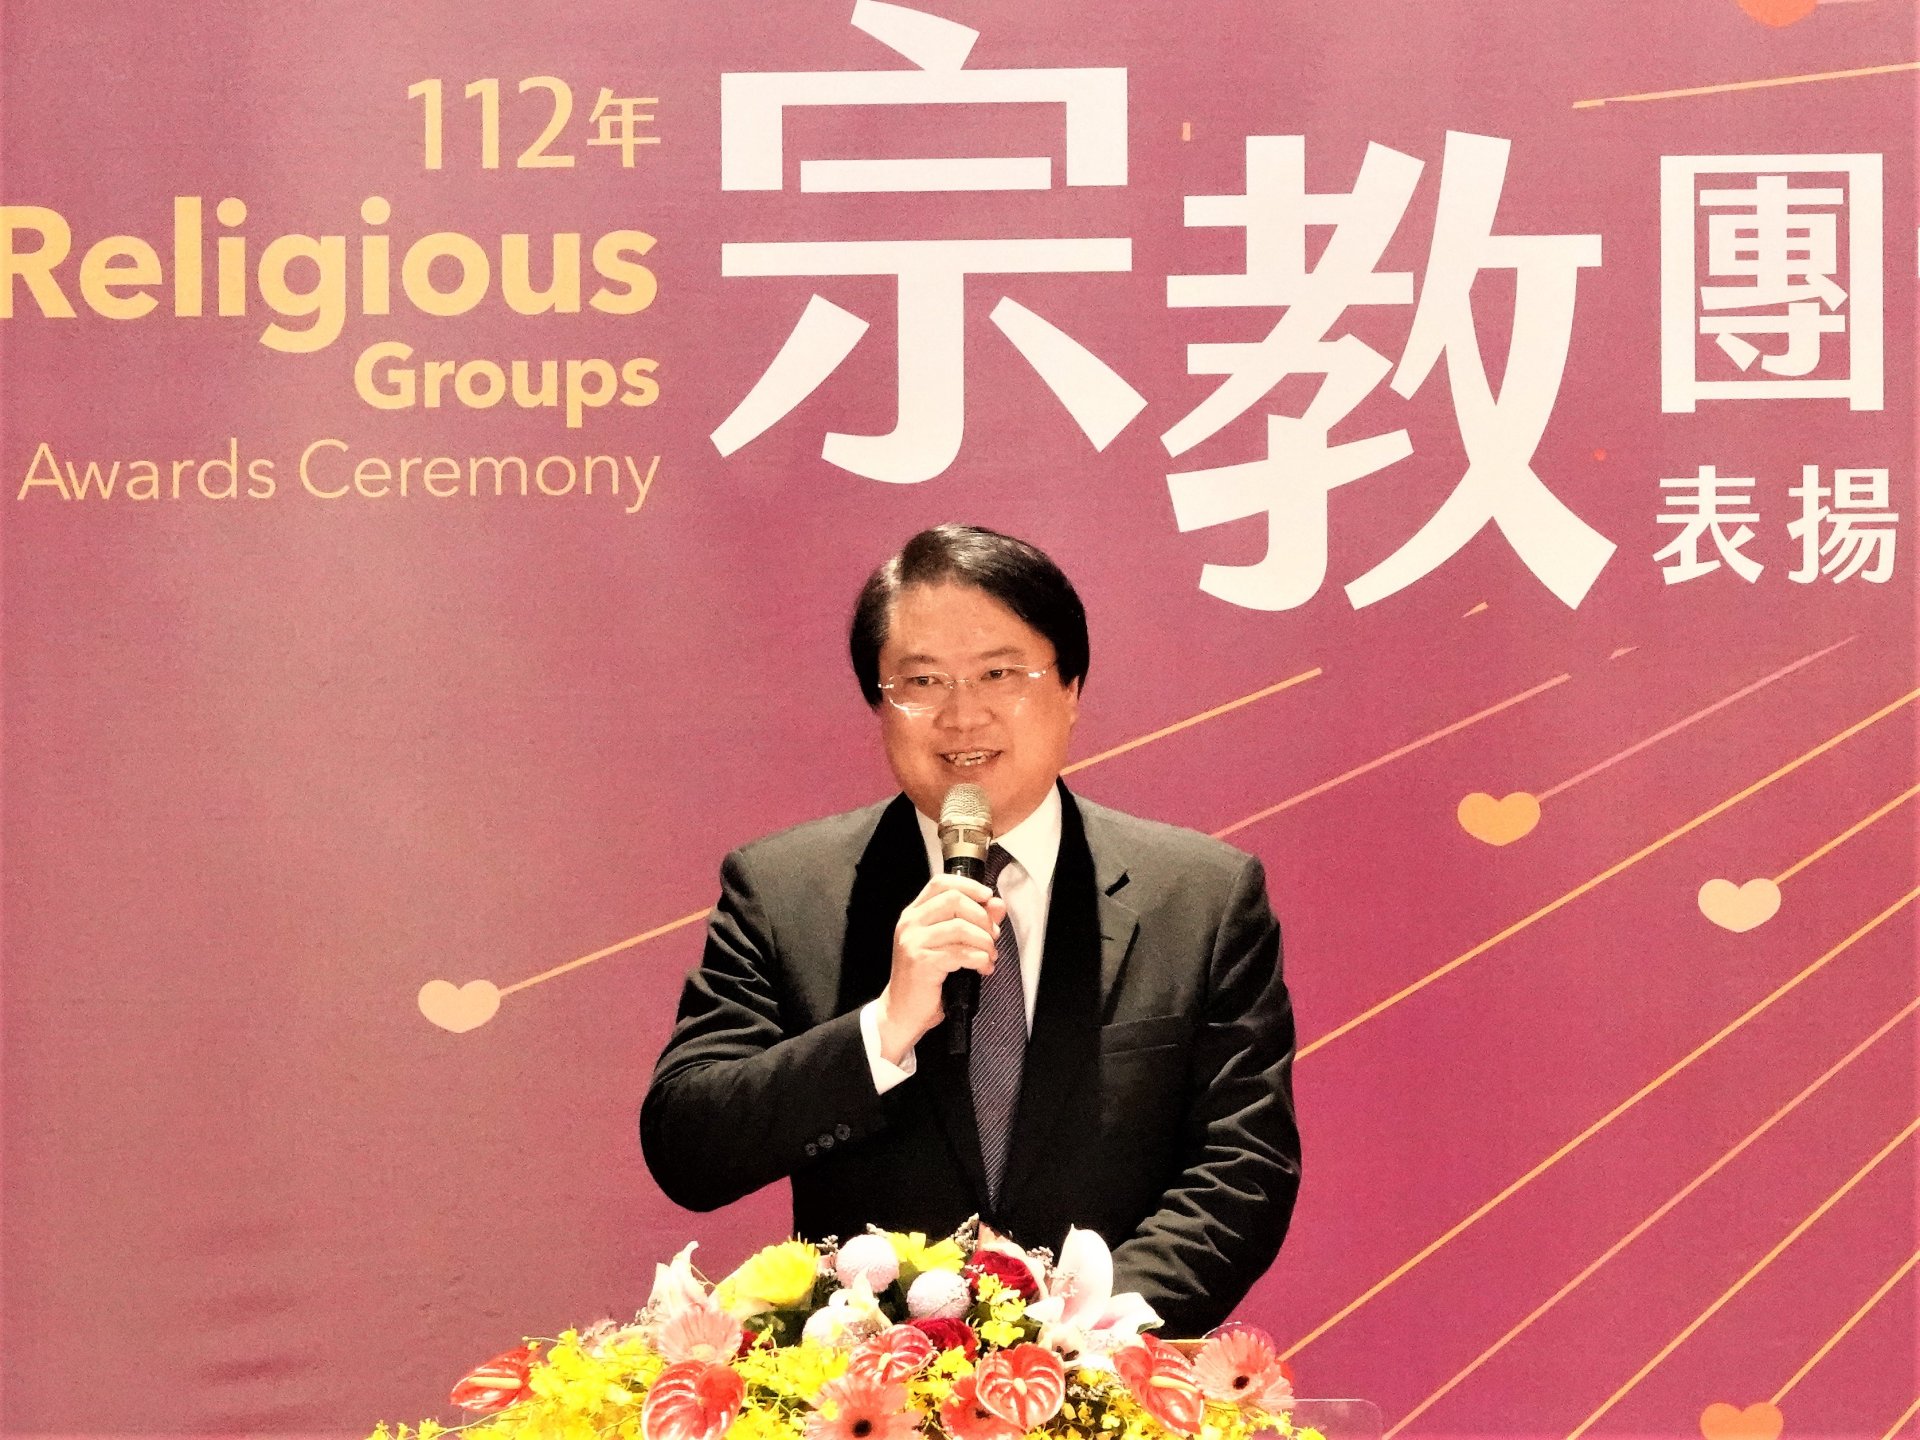 內政部「112年全國宗教團體表揚大會」於8月25日在嘉義縣舉行頒獎典禮，內政部長林右昌等人出席典禮。